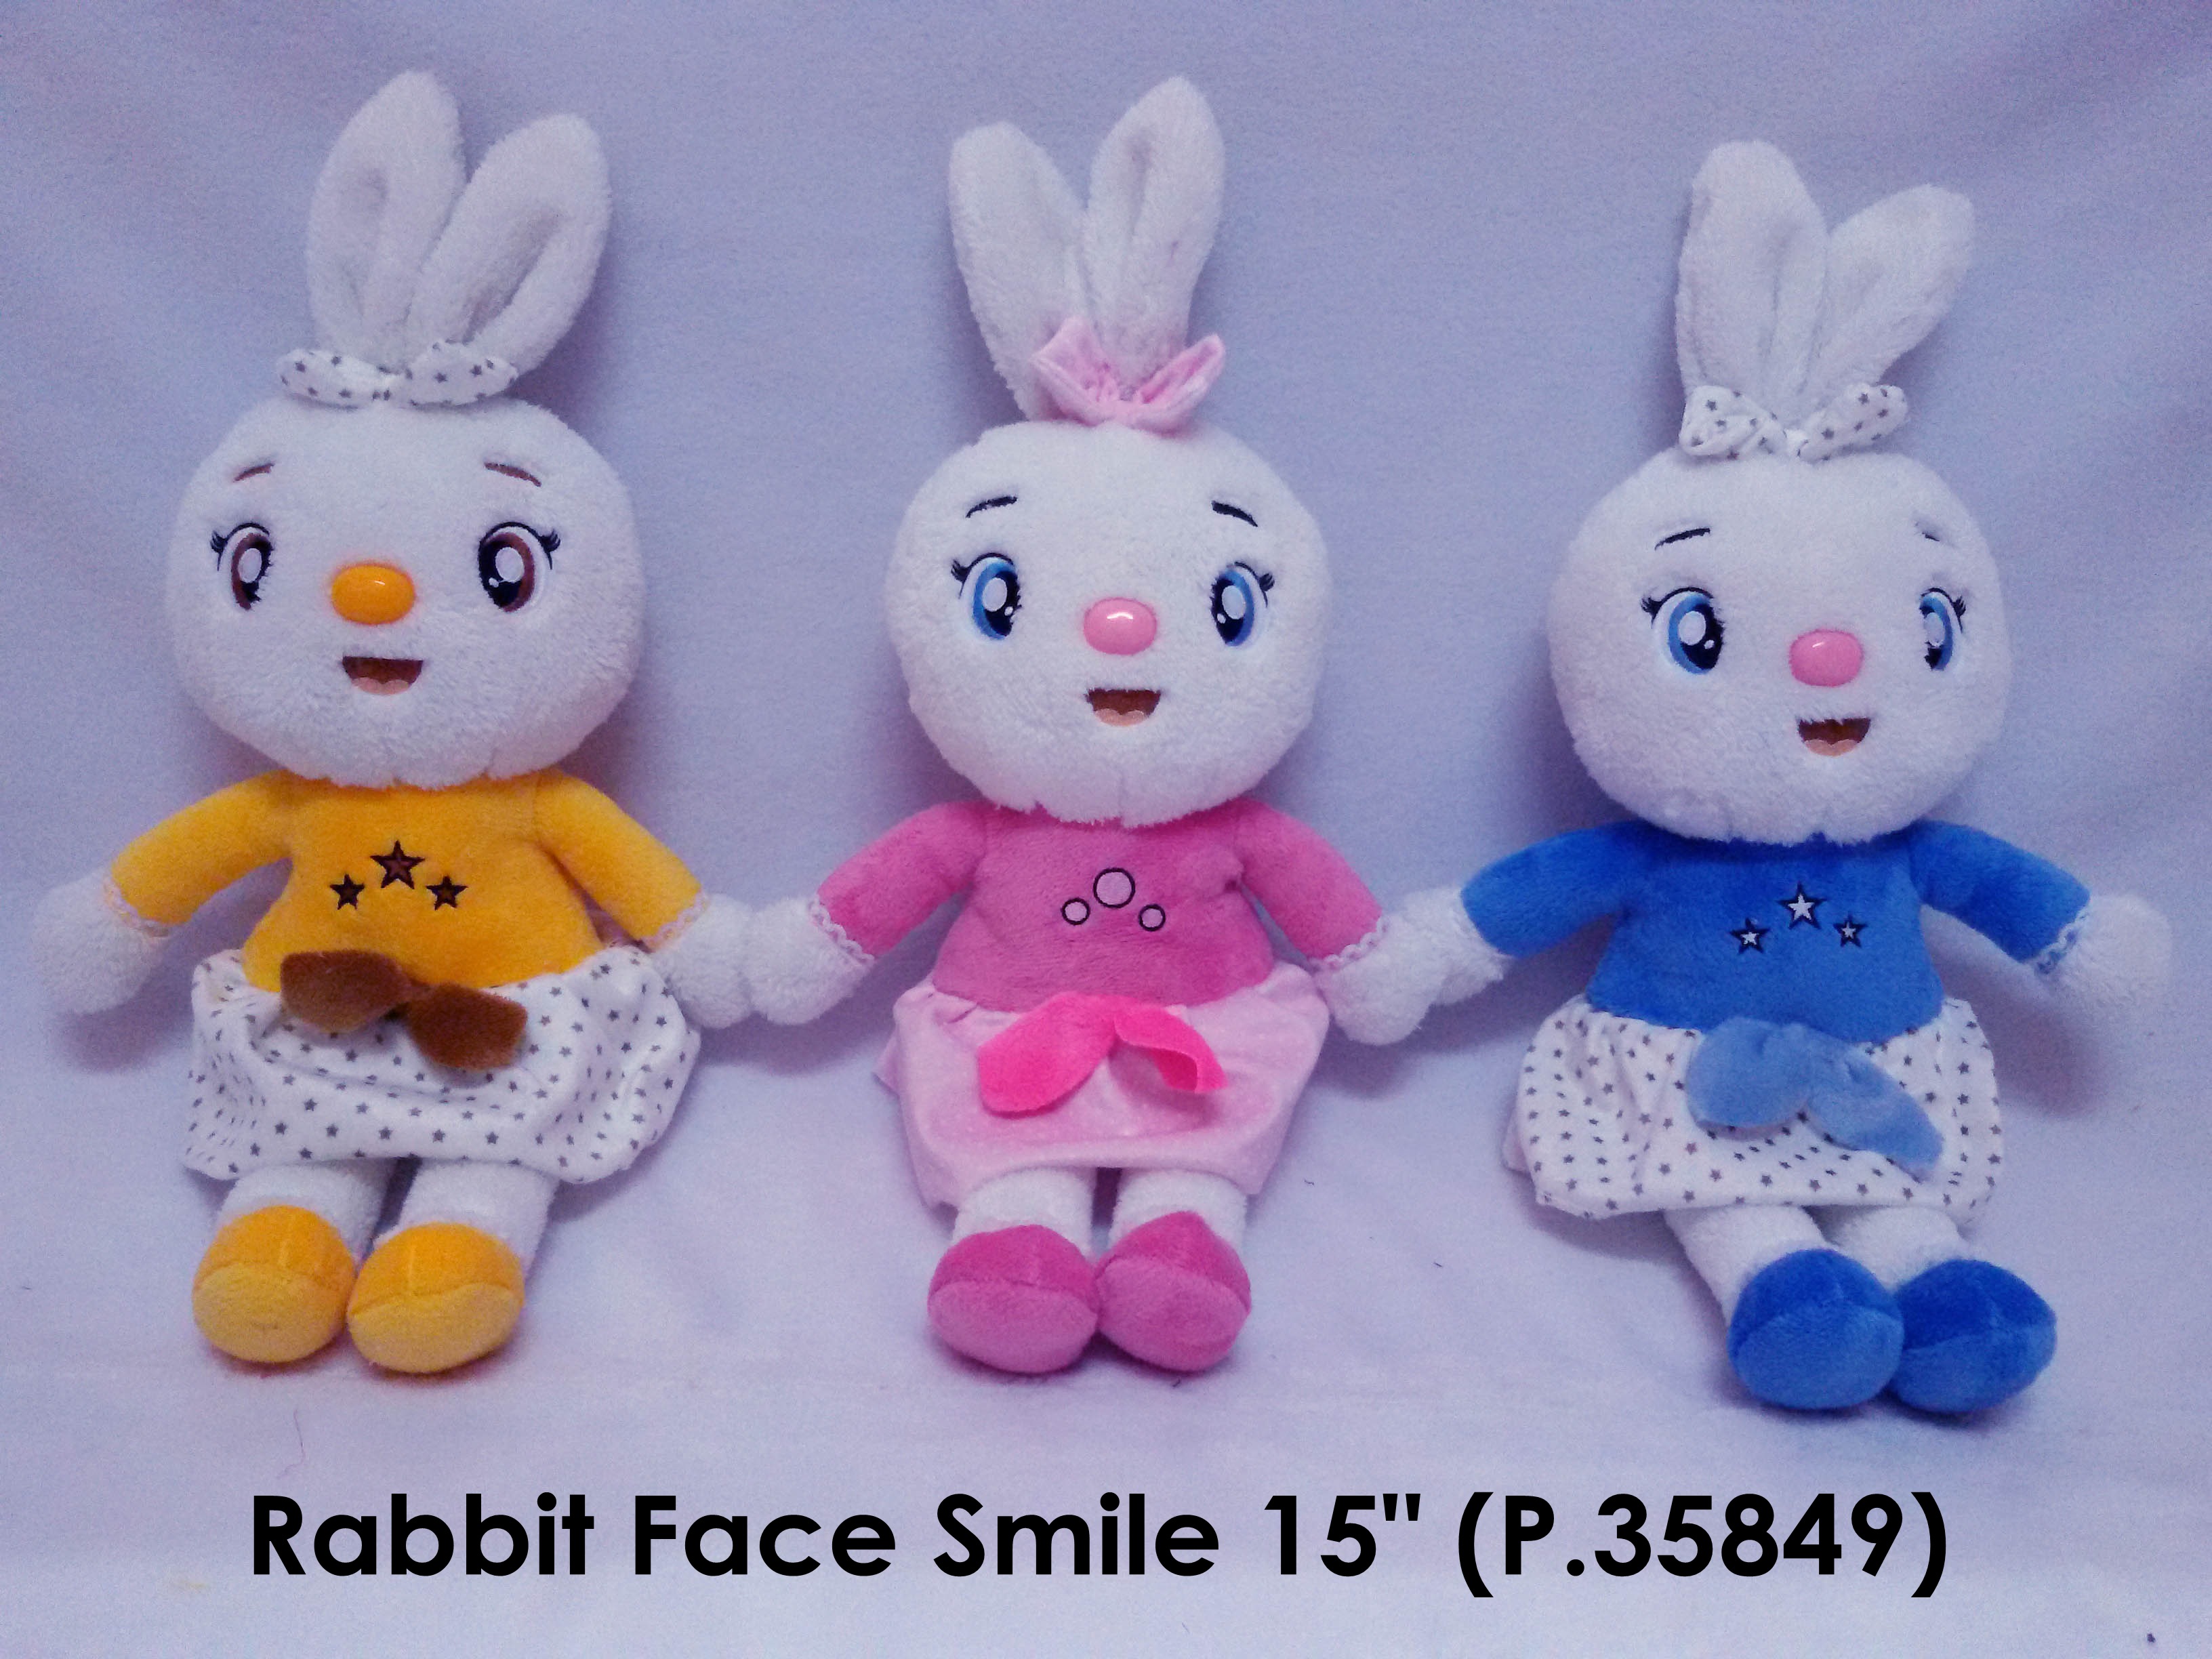 Rabbit face smile  P.35849.jpg